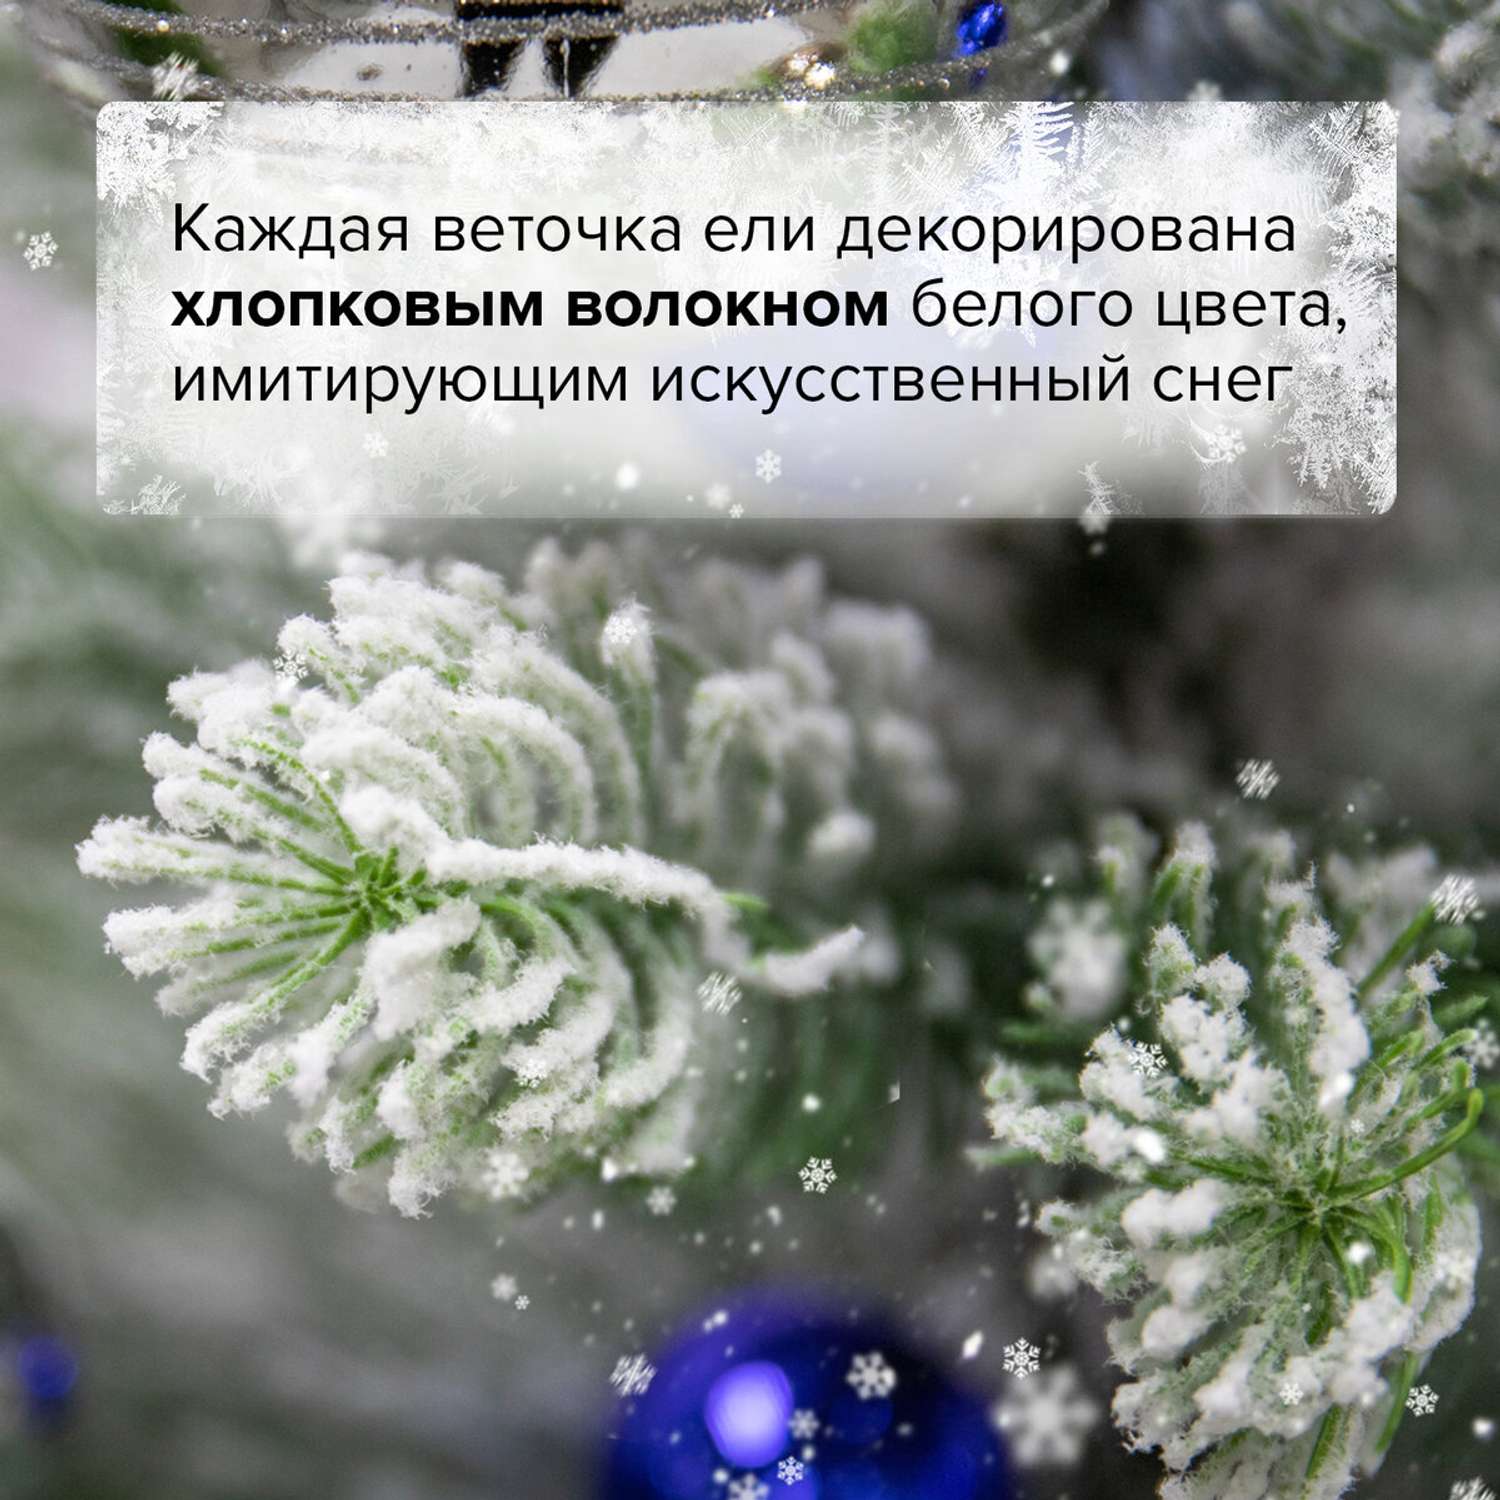 Новогодняя елка Золотая сказка новогодняя искусственная заснеженная Snow Queen 150 см - фото 8